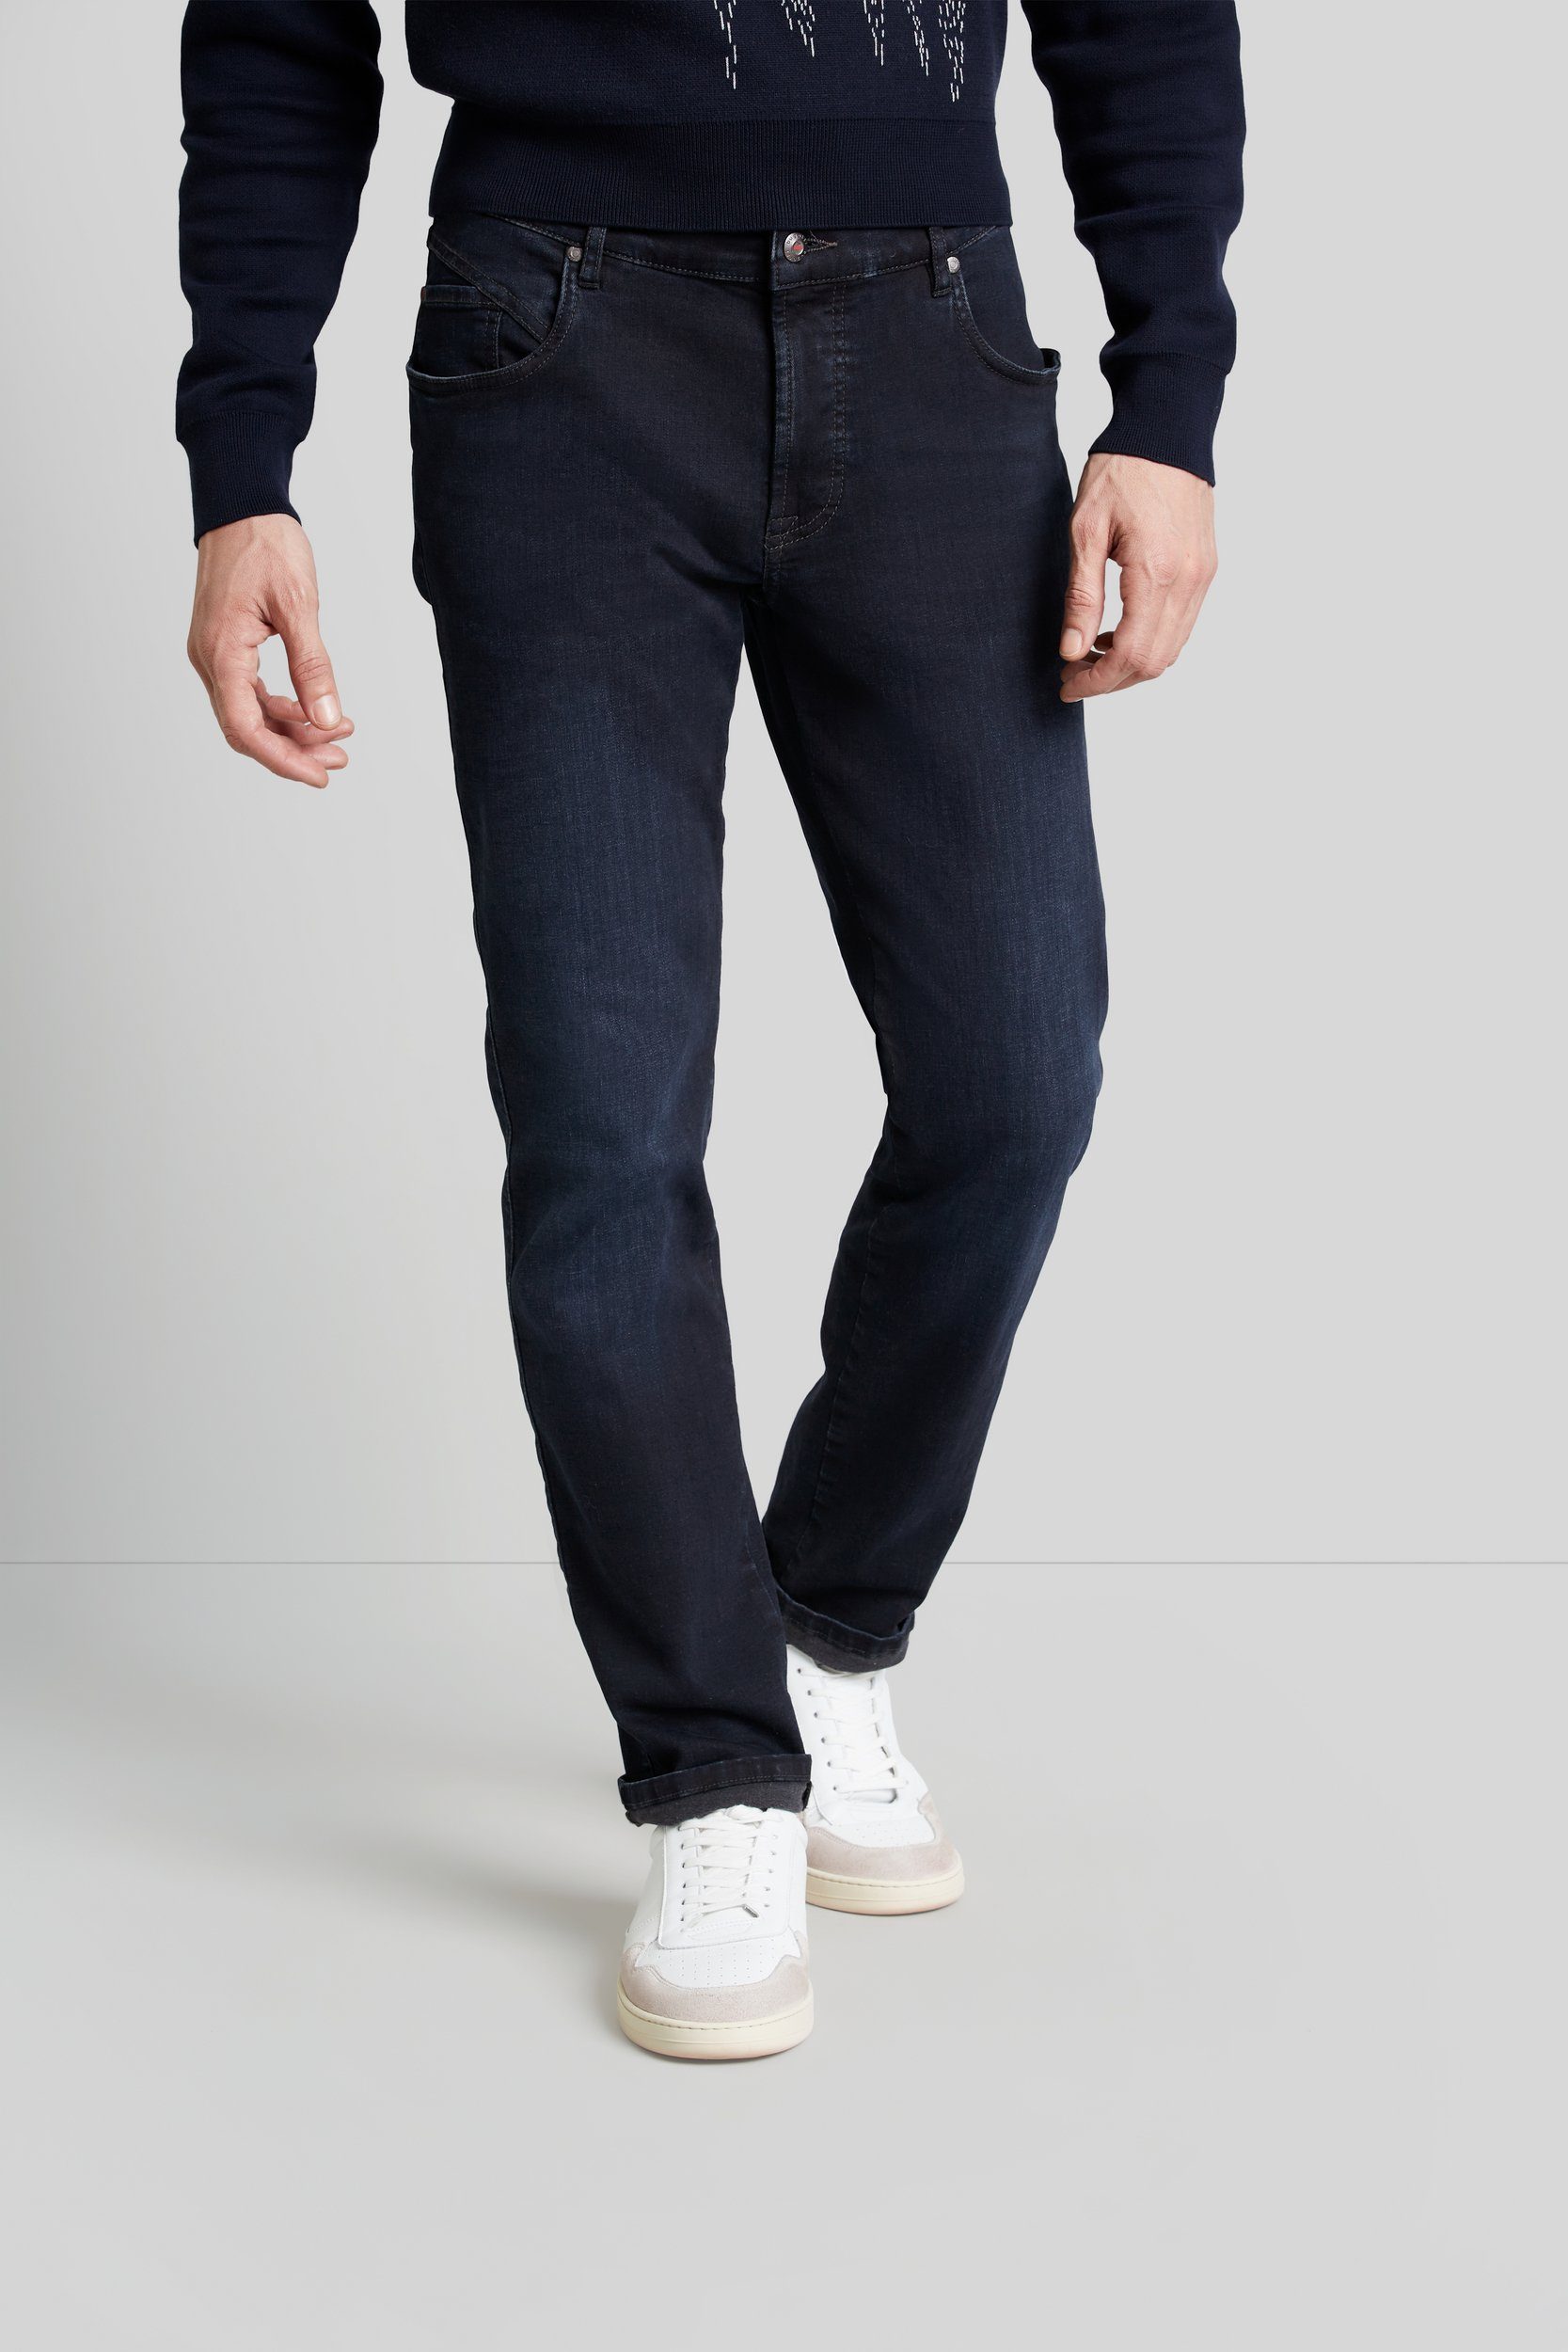 bugatti 5-Pocket-Jeans Flexcity Denim mit hohem Tragekomfort dunkelblau